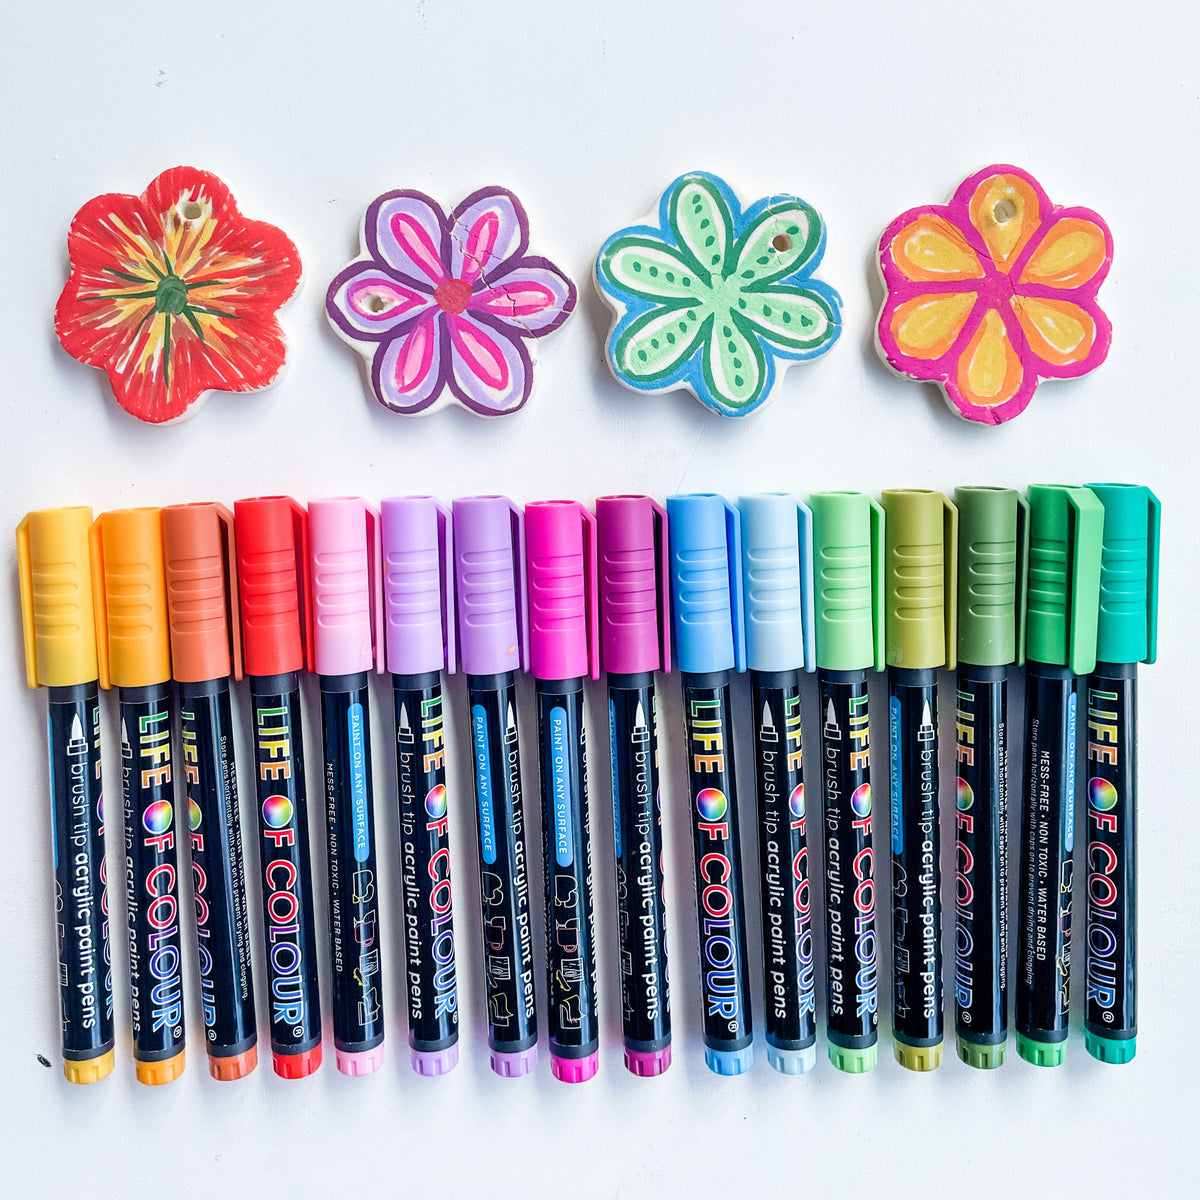 Power Pack Bundle - 4 Sets of Paint Pens